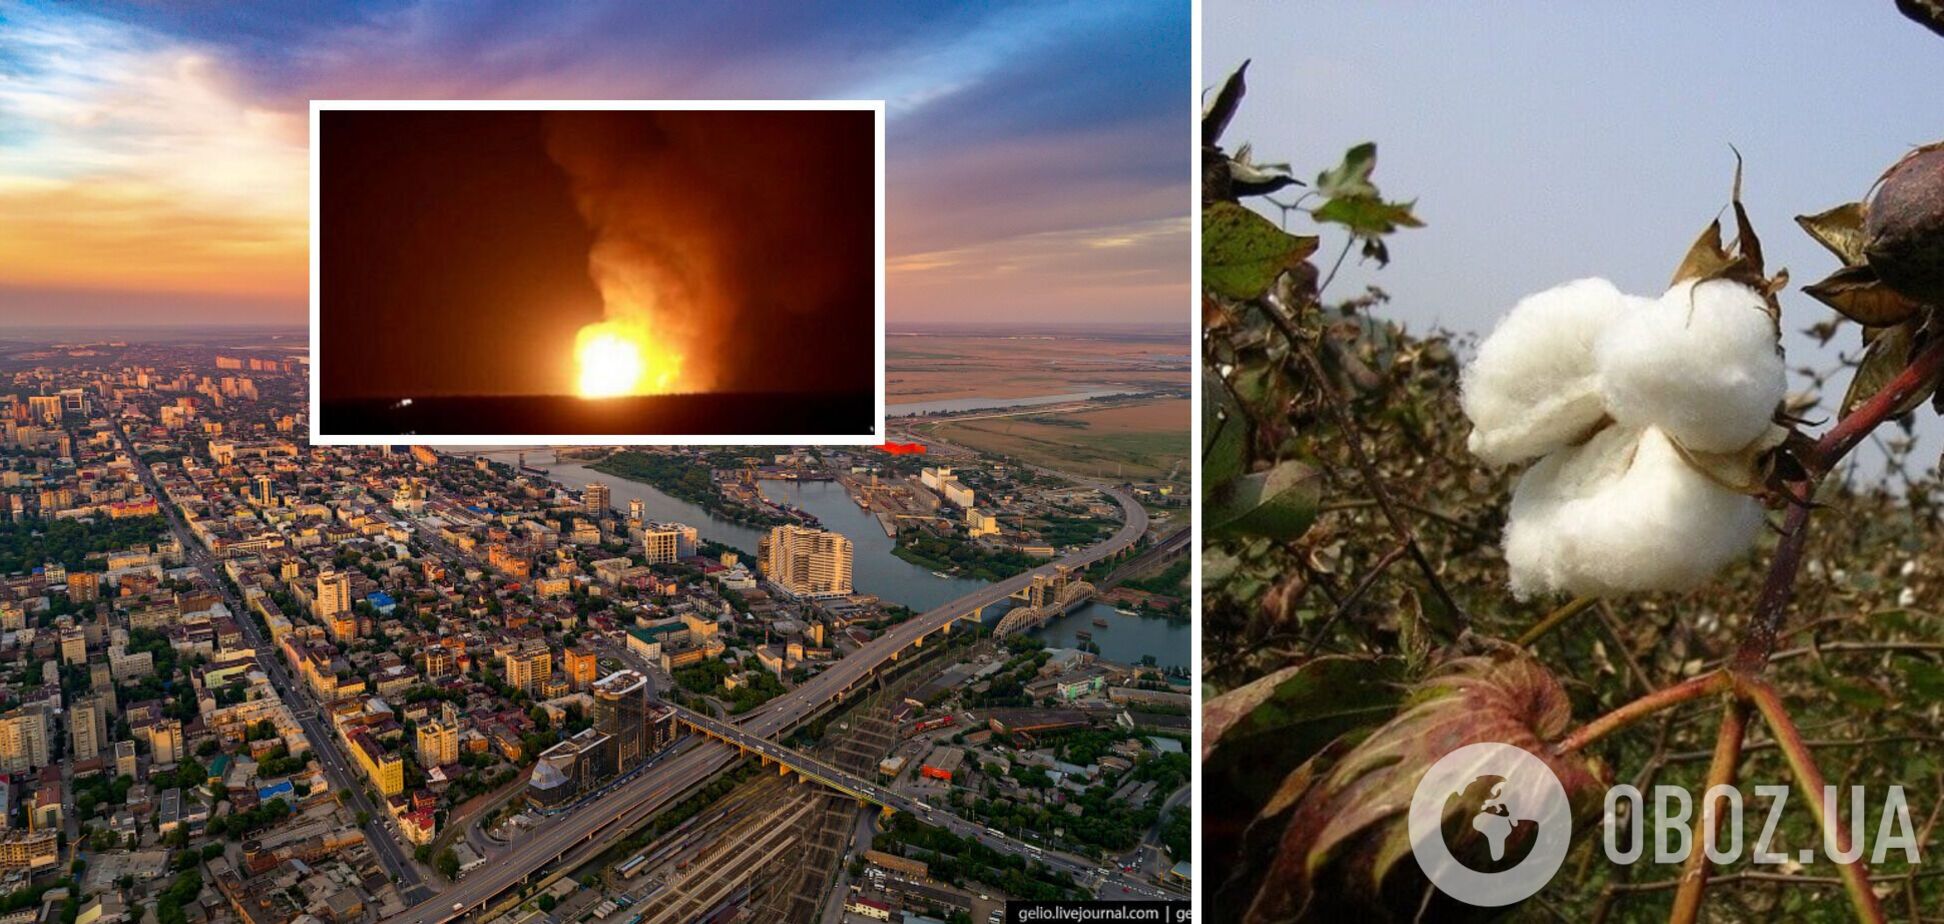 'Бавовна' добралась до Ростова: в городе раздался мощный взрыв. Видео